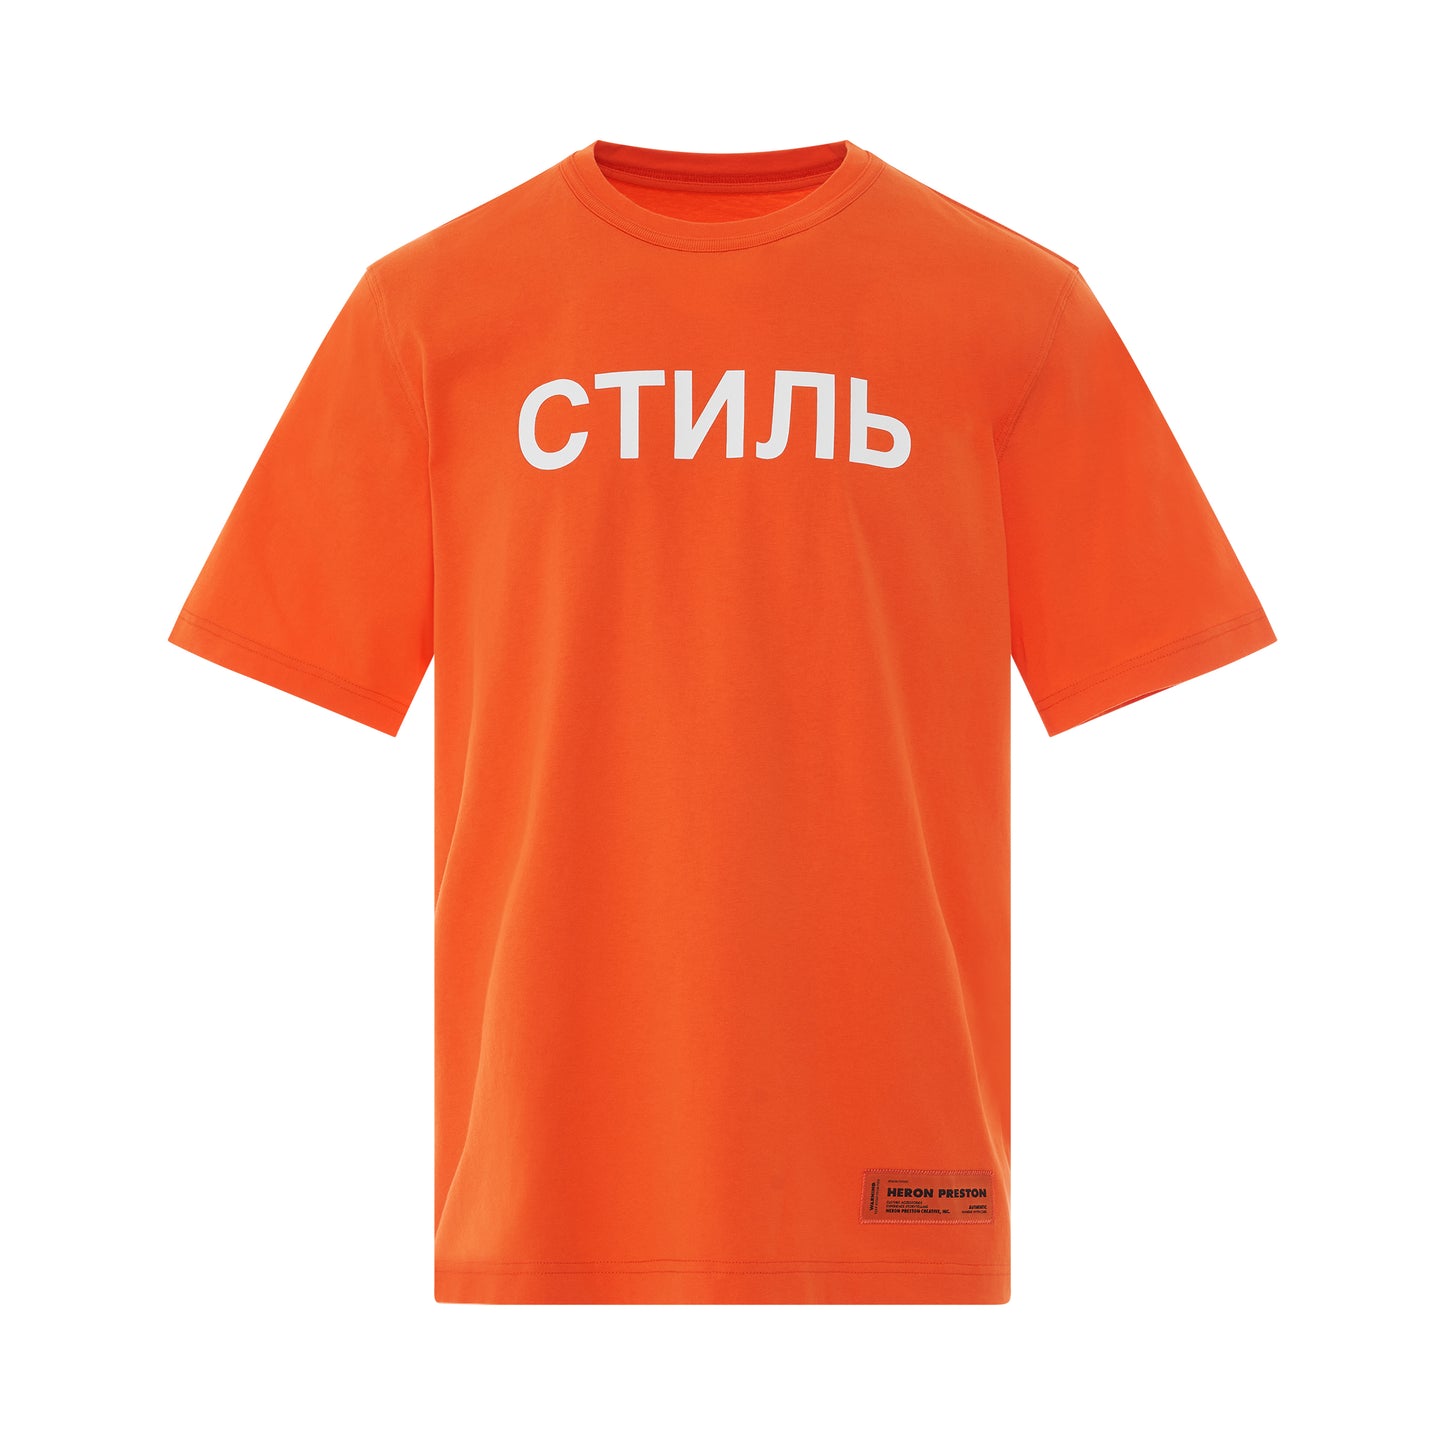 CTNMB Regular T-Shirt in Orange